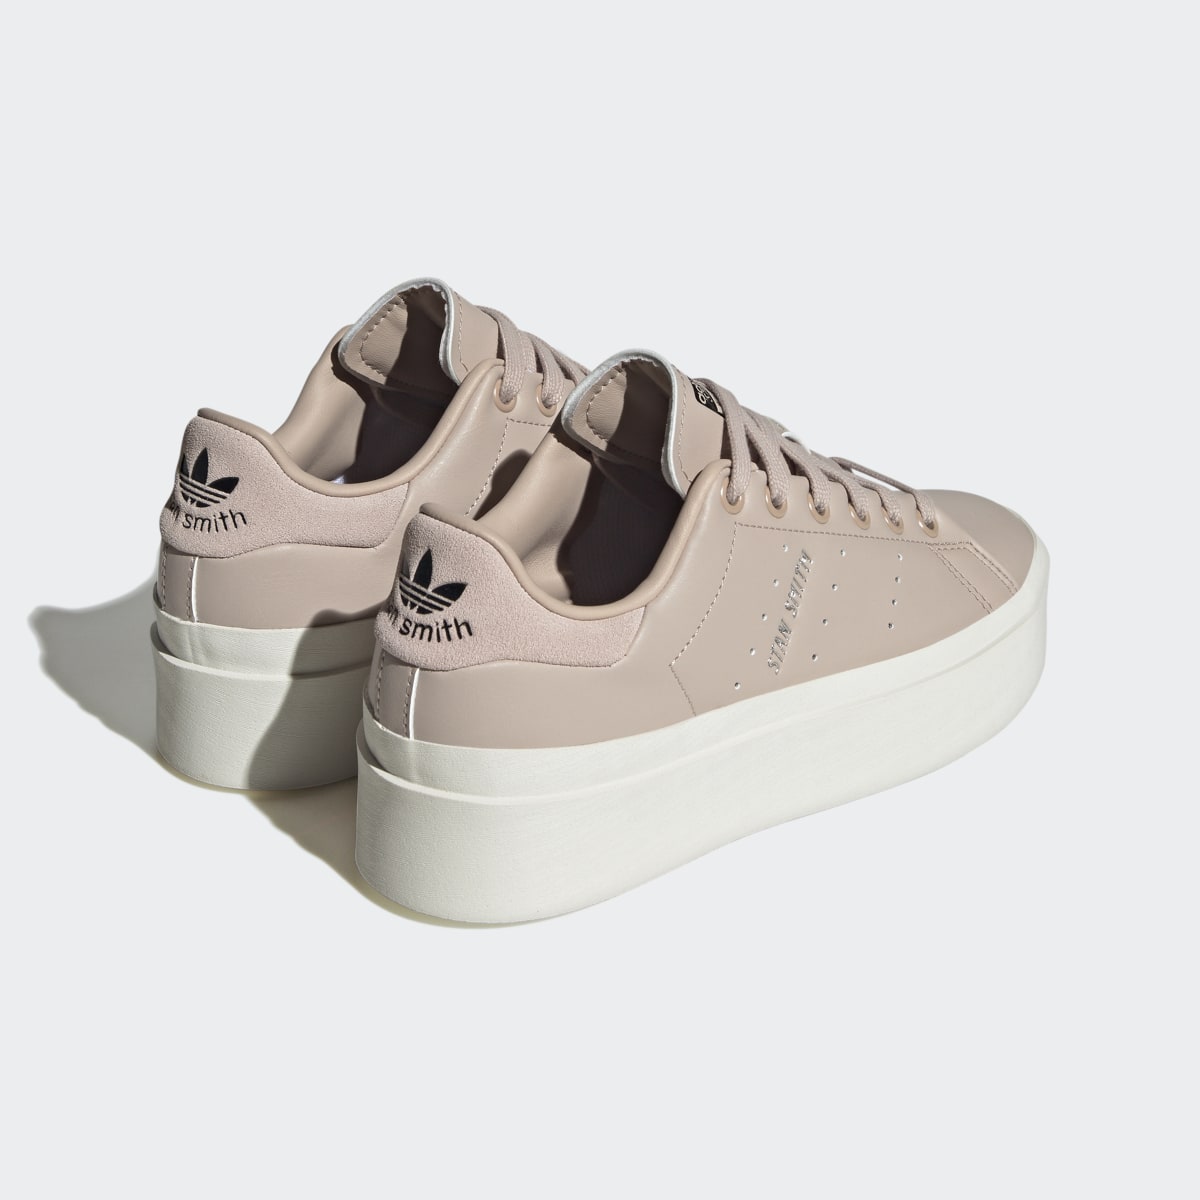 Adidas Stan Smith Bonega Shoes. 11